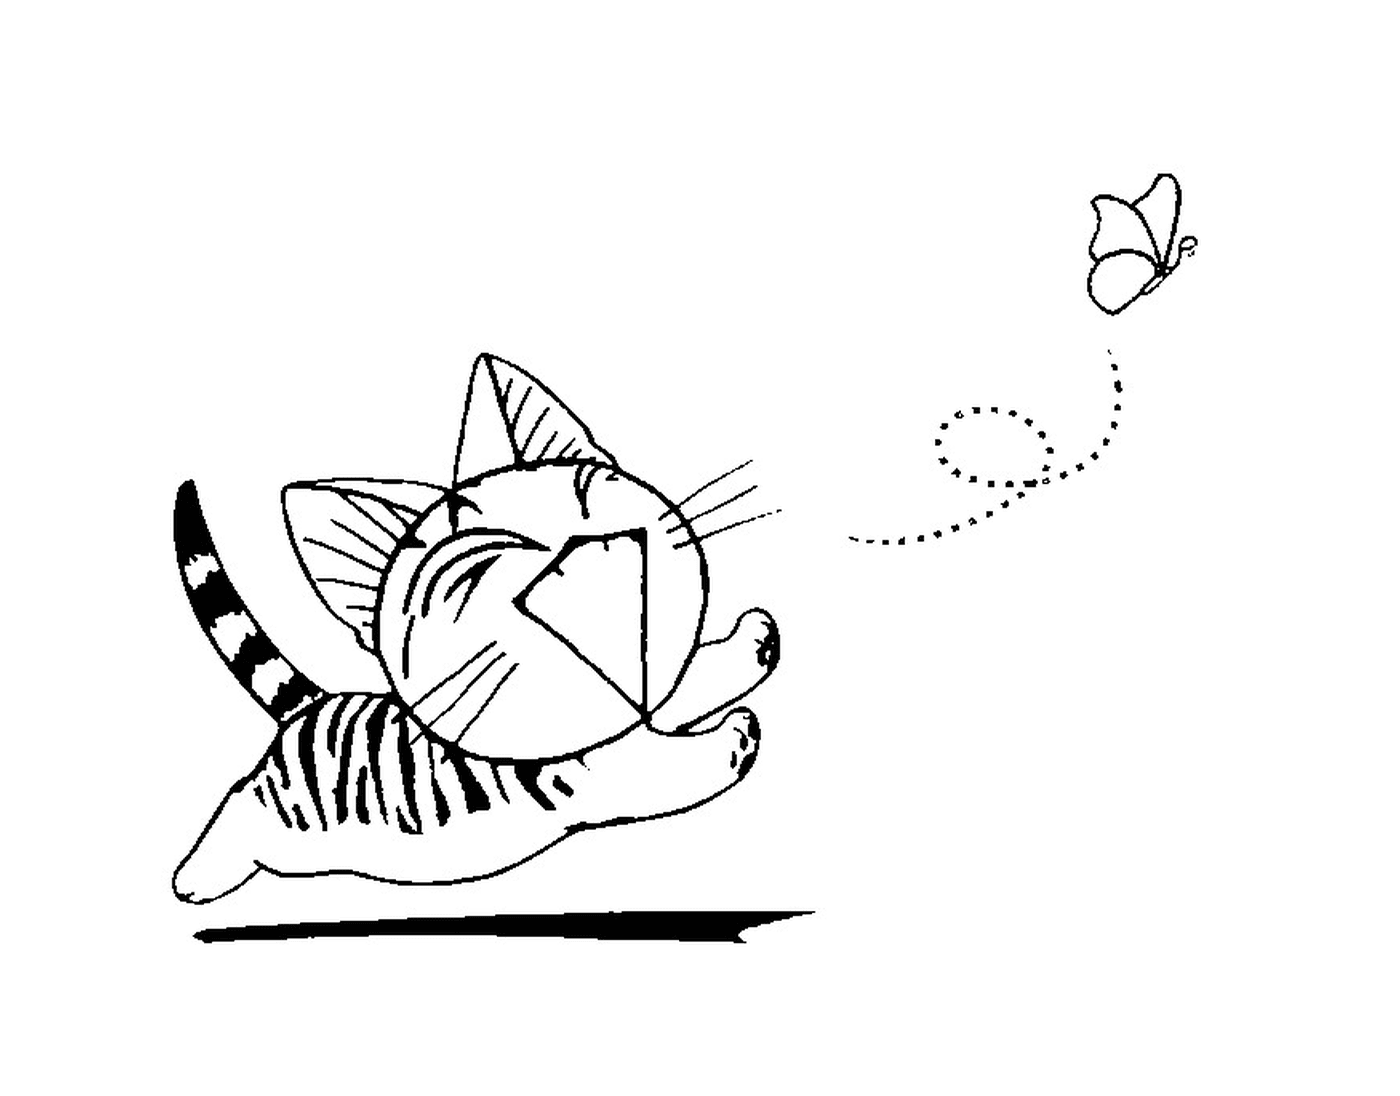  Un gato chino corriendo tras una mariposa 